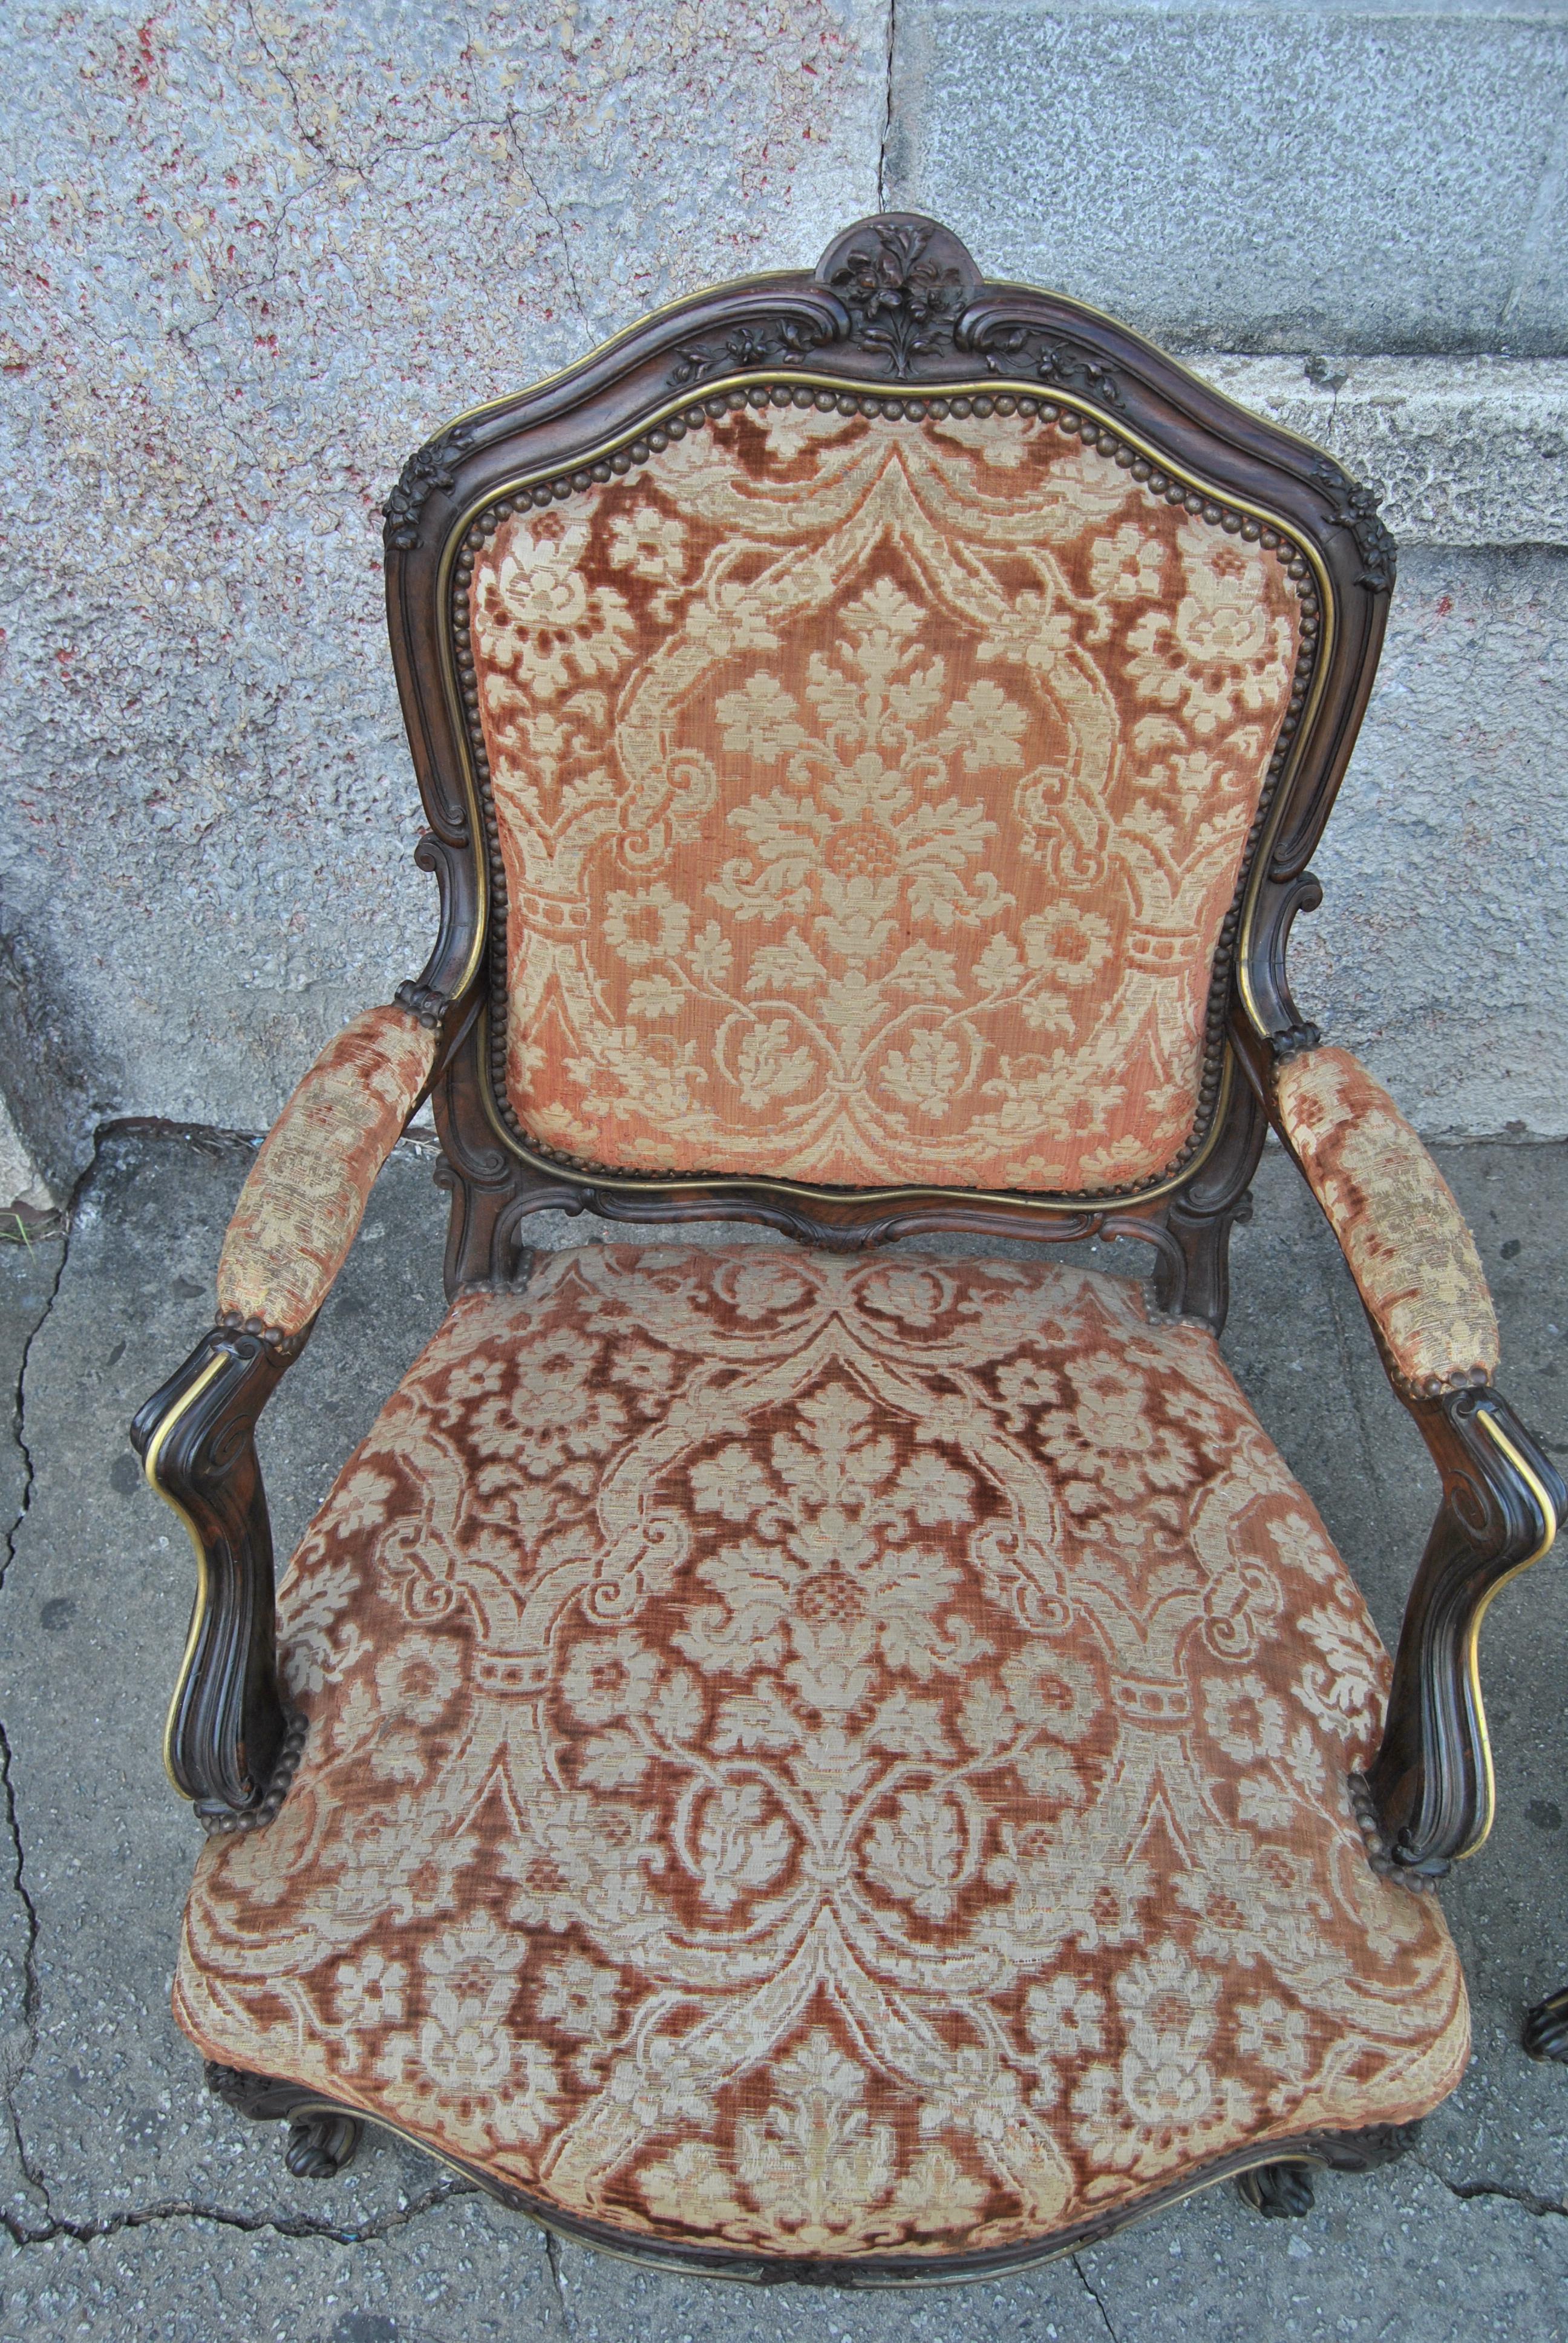 Dies ist ein Paar Sessel aus Frankreich, um 1880. Die Stühle sind aus massivem Palisanderholz gefertigt. Jeder Stuhl ist von Hand geschnitzt und von höchster Qualität. Die Stühle haben eine stark geformte Rückenlehne. Auch die Armlehnen, die Seite